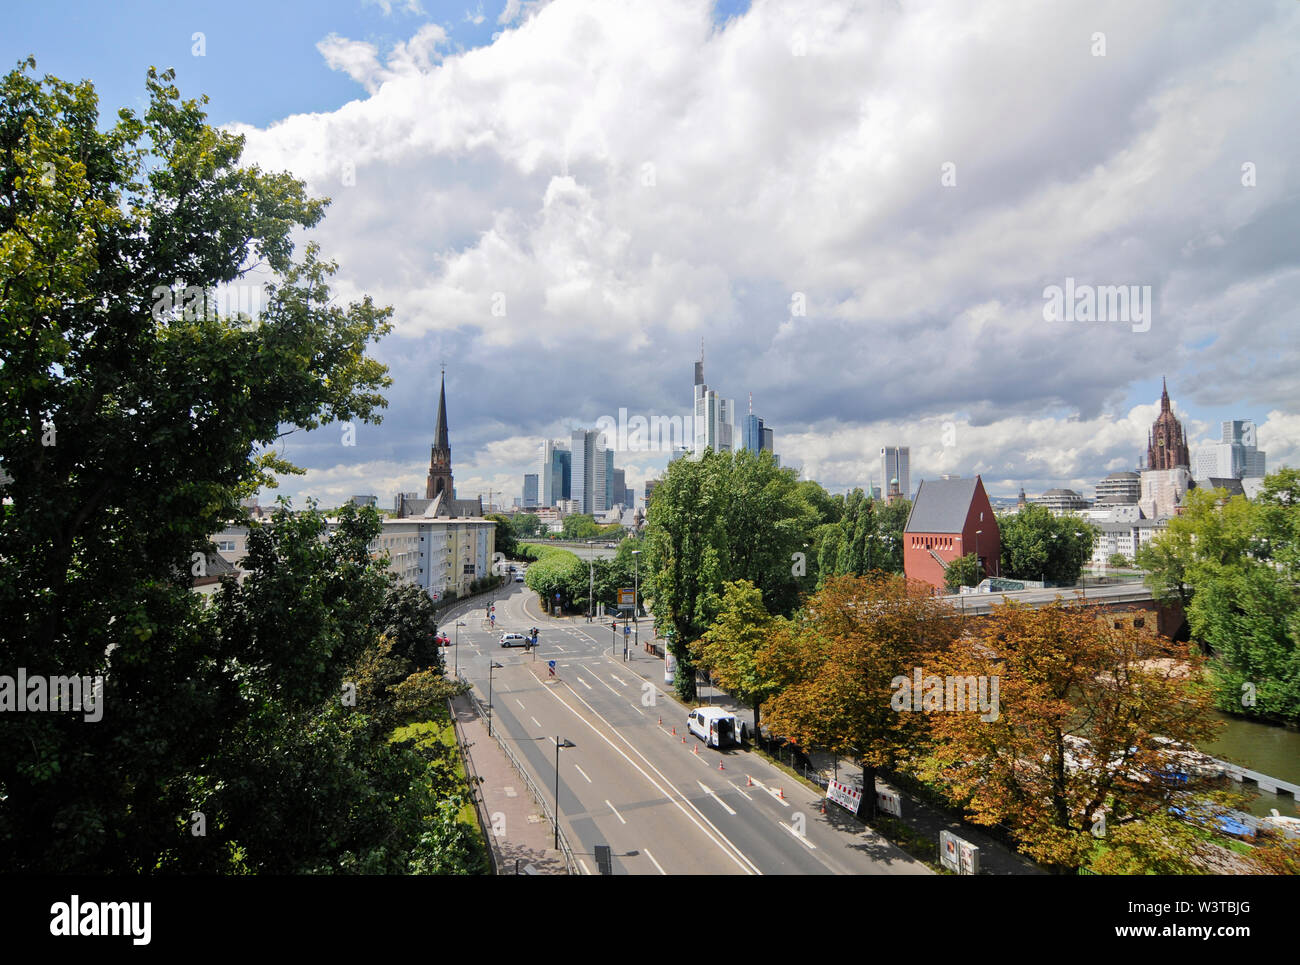 Francfort, vue panoramique et d'horizon. Allemagne Banque D'Images